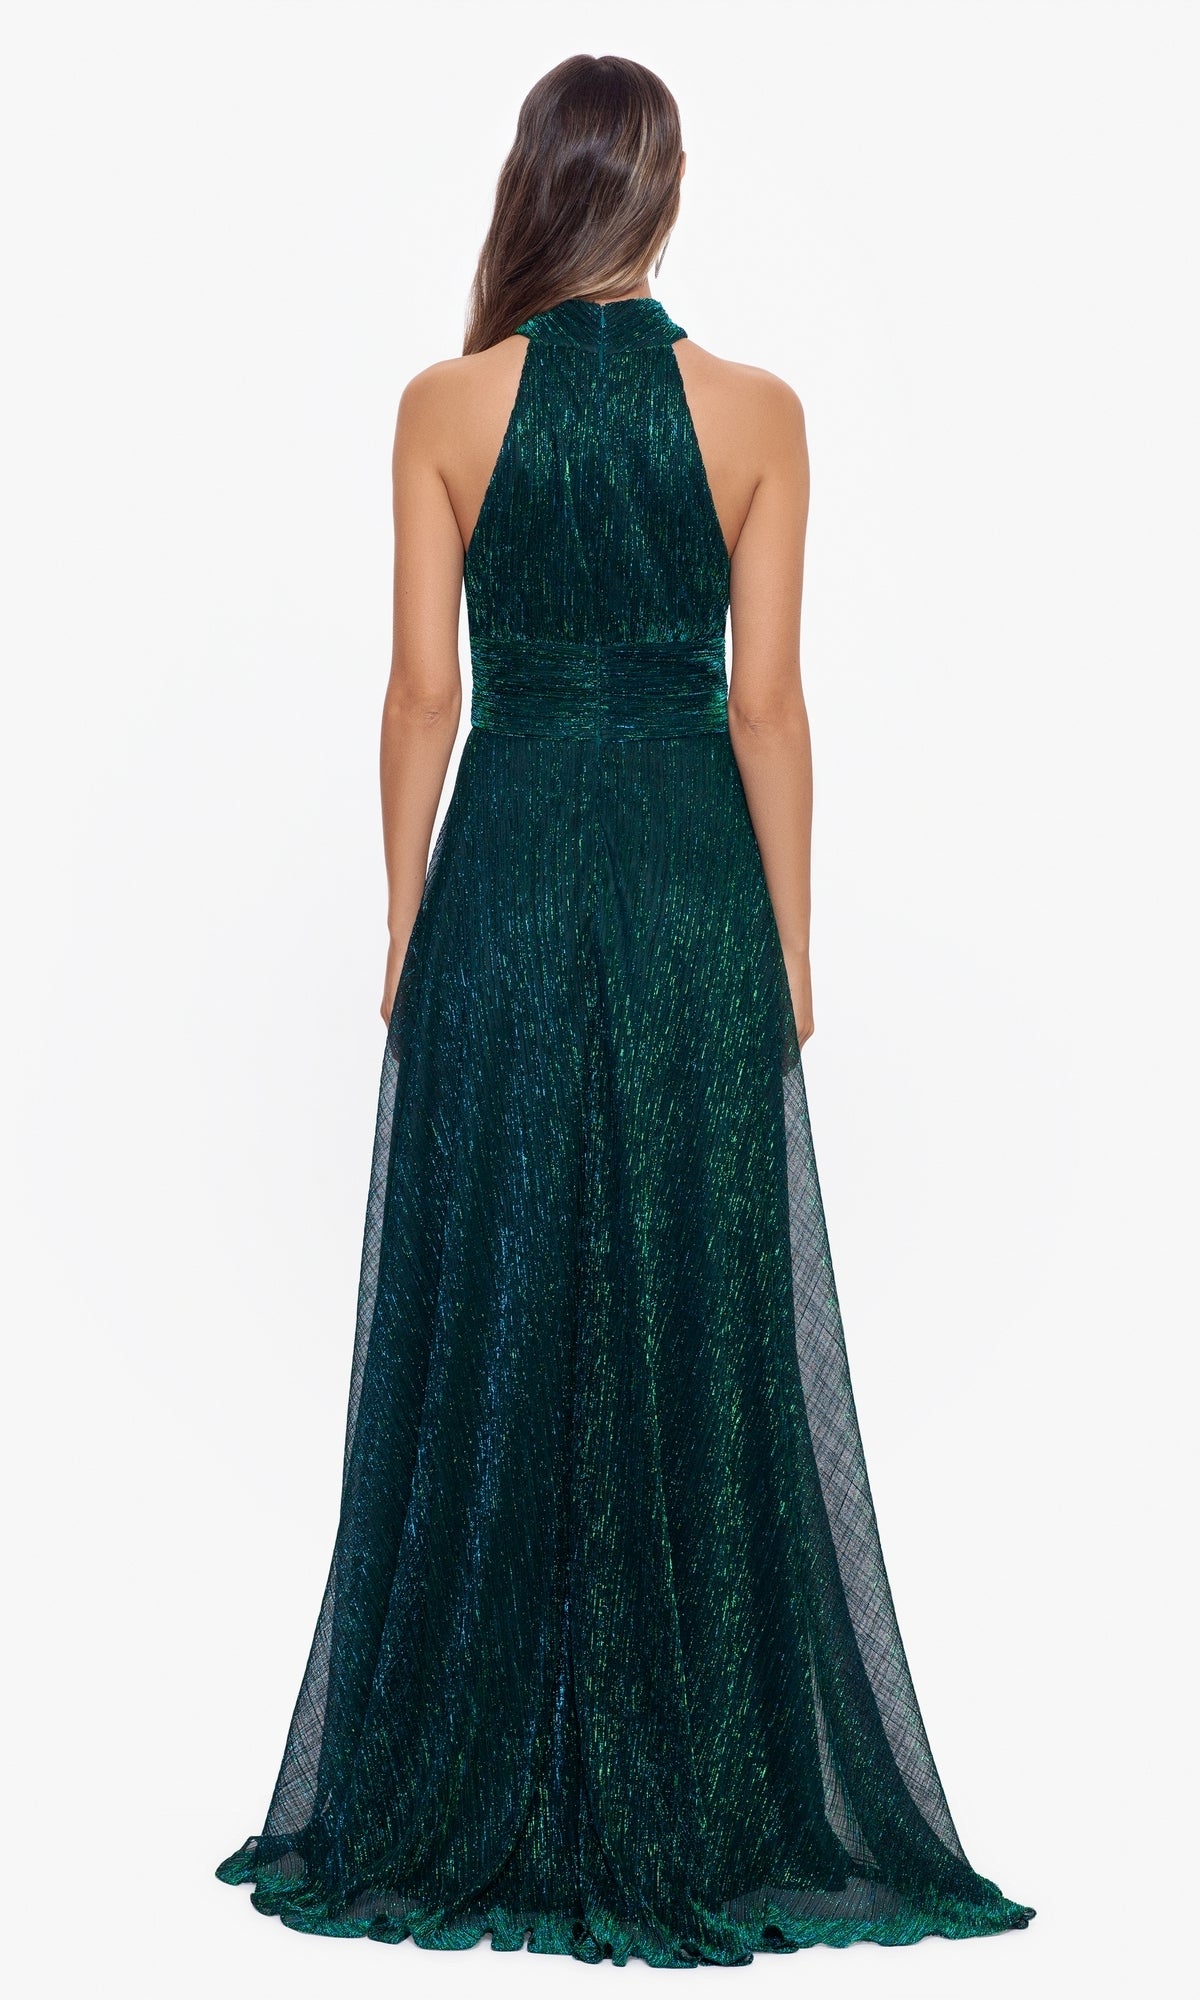 Empire-Waist High-Neck Long Shimmer Prom Dress A24948